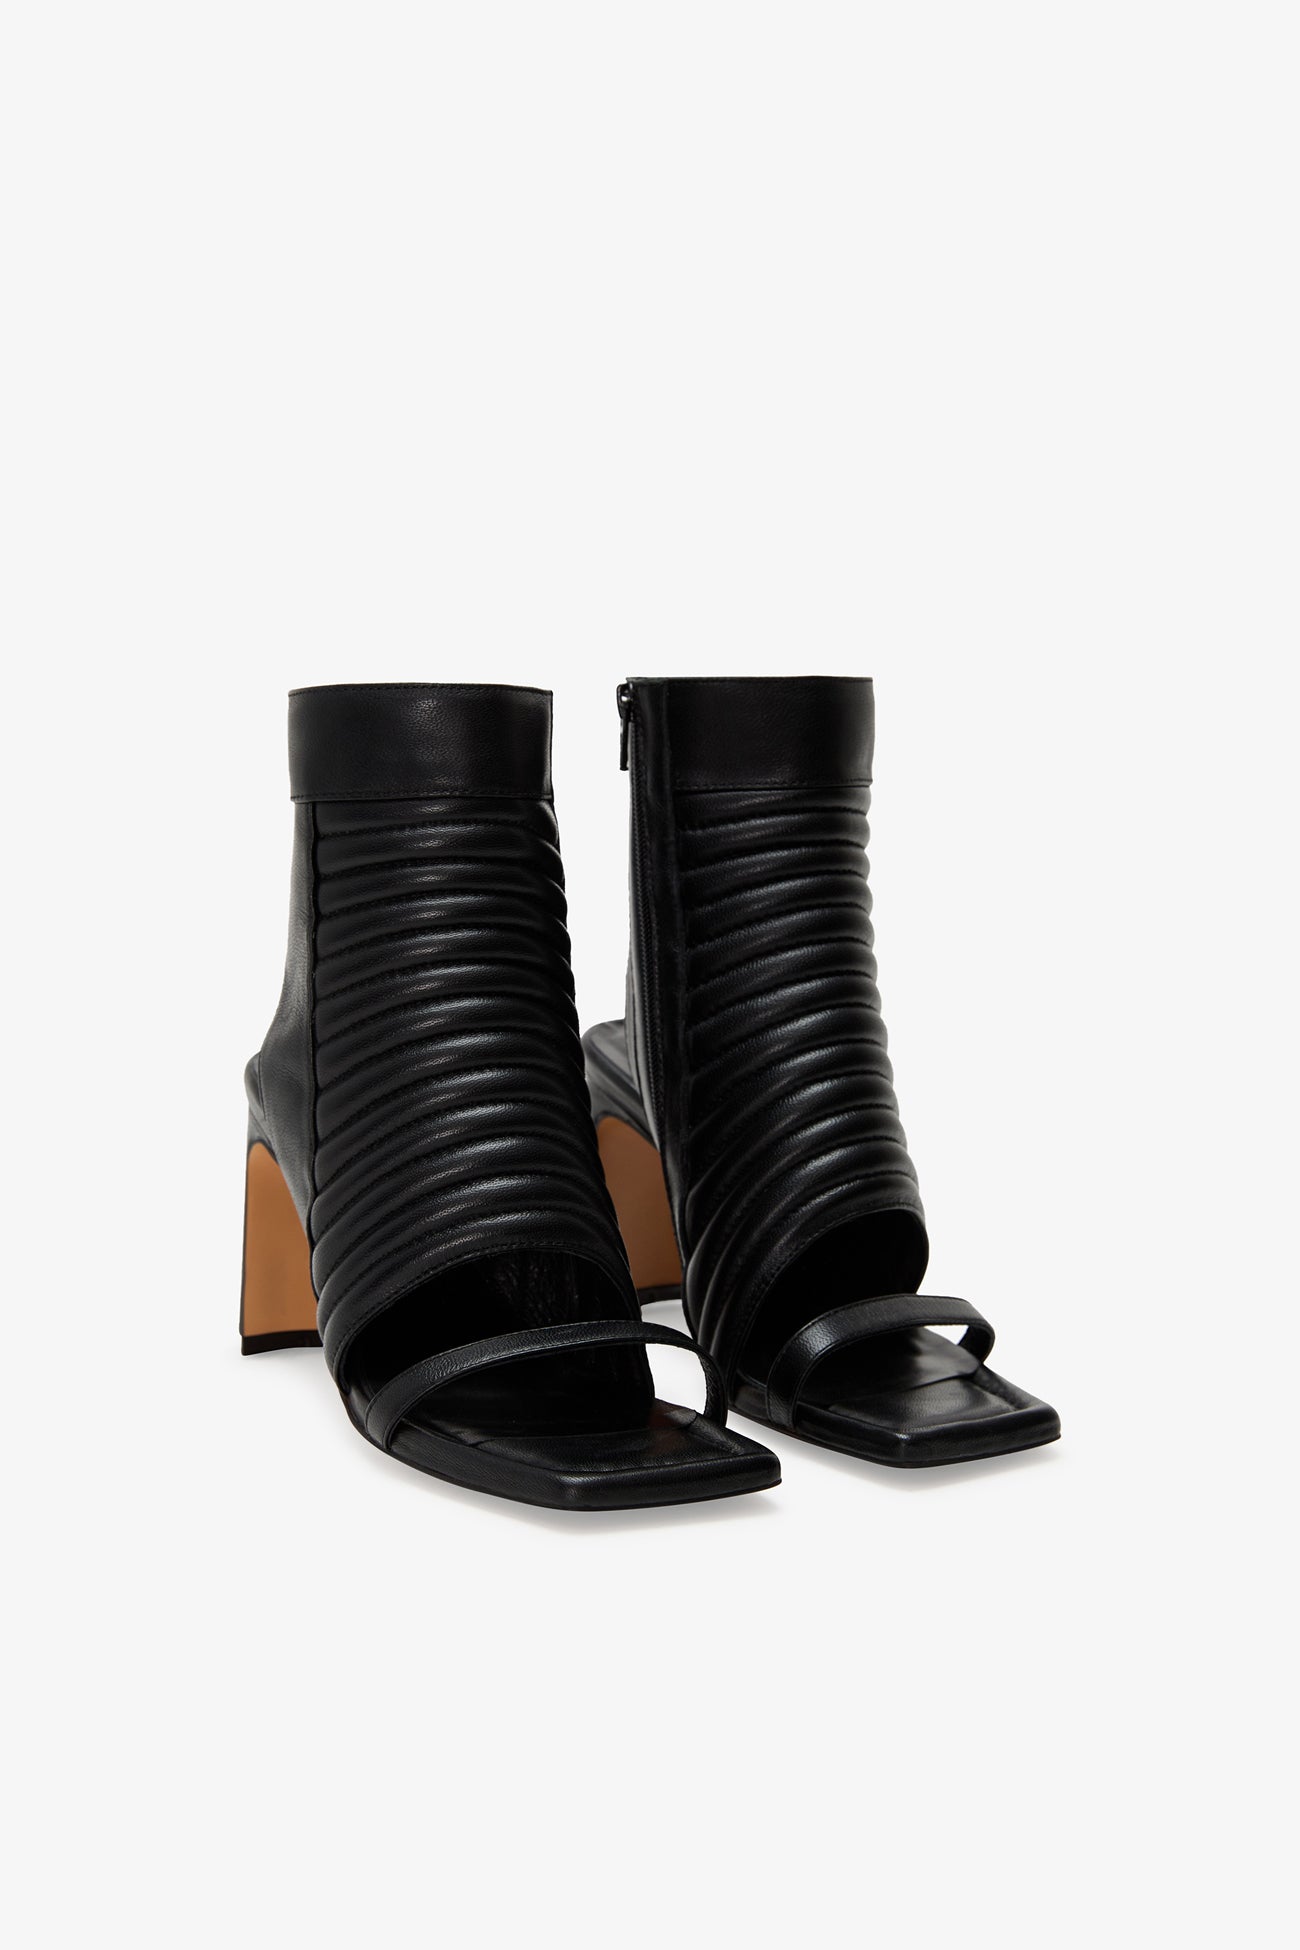 Black Peep Toe Sandals - Tulla Heeled Sandals | Marcella